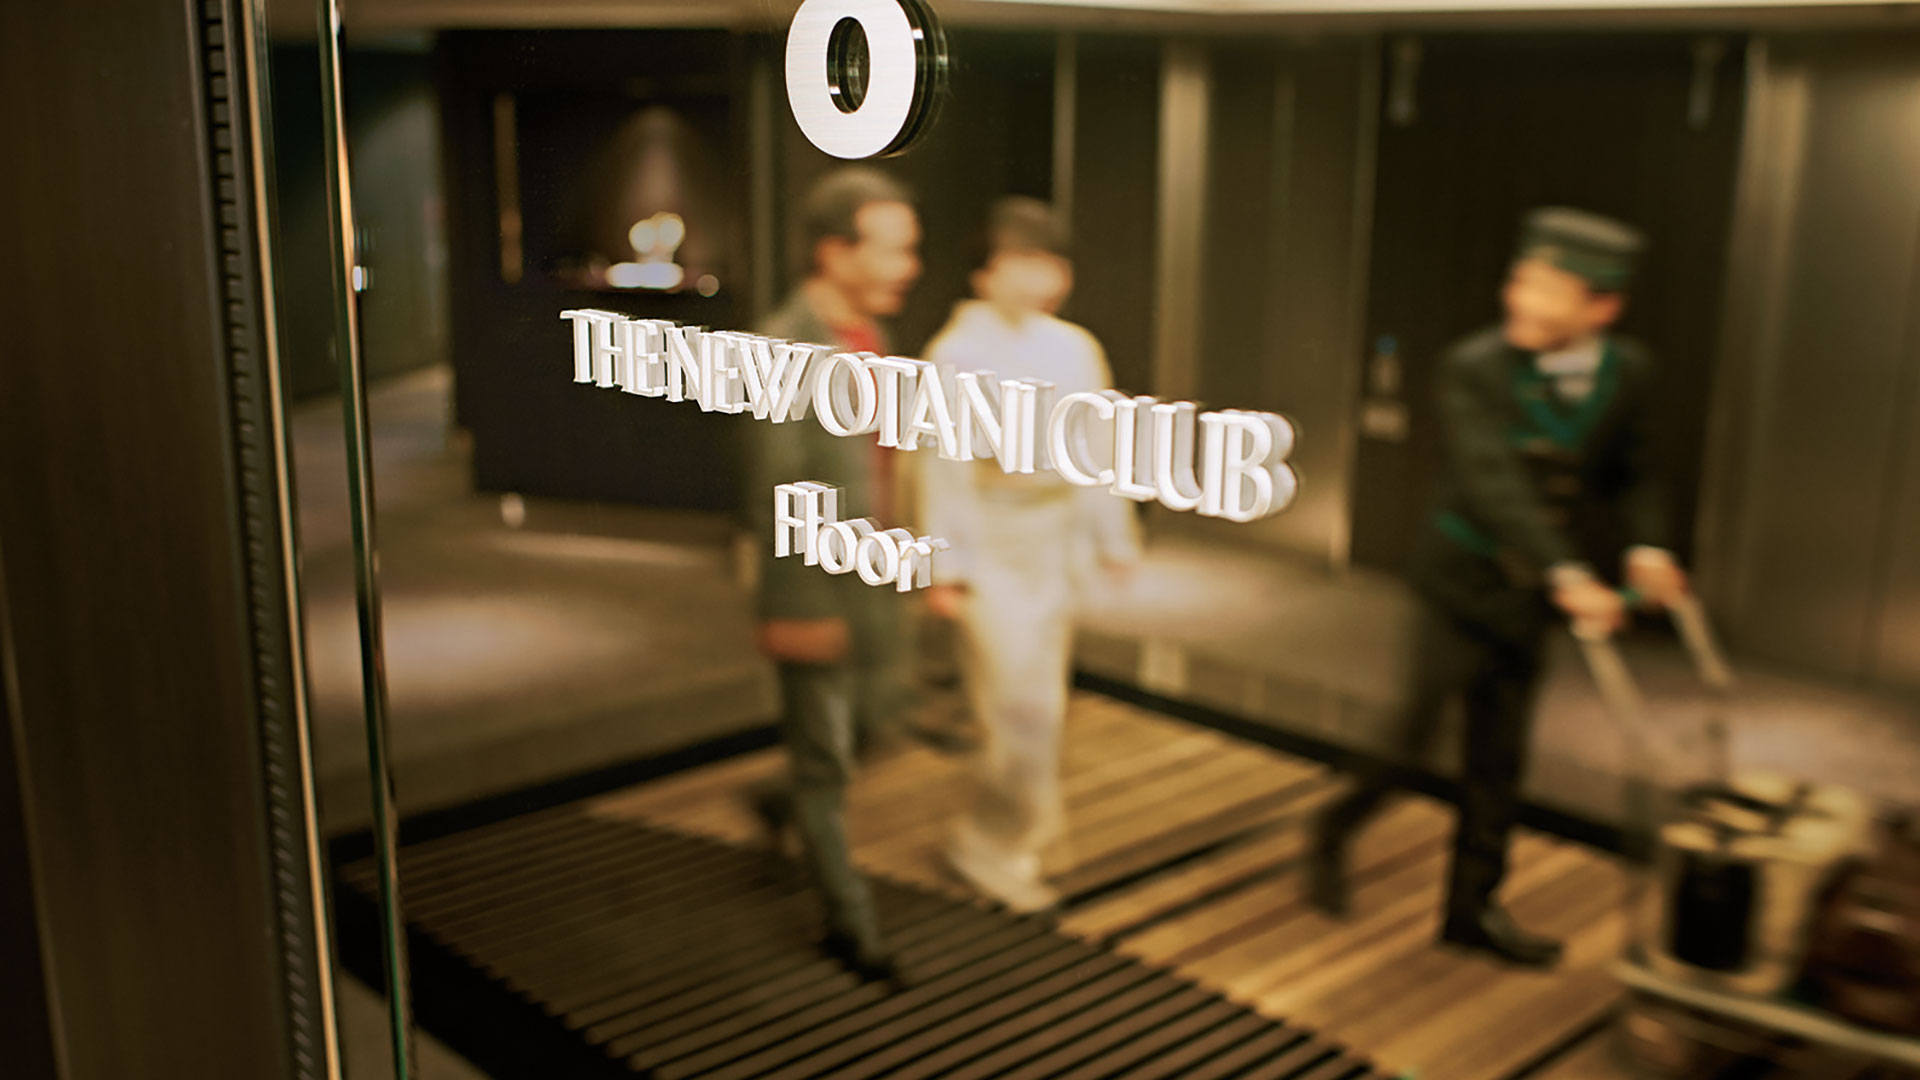 New Otani Club Floors